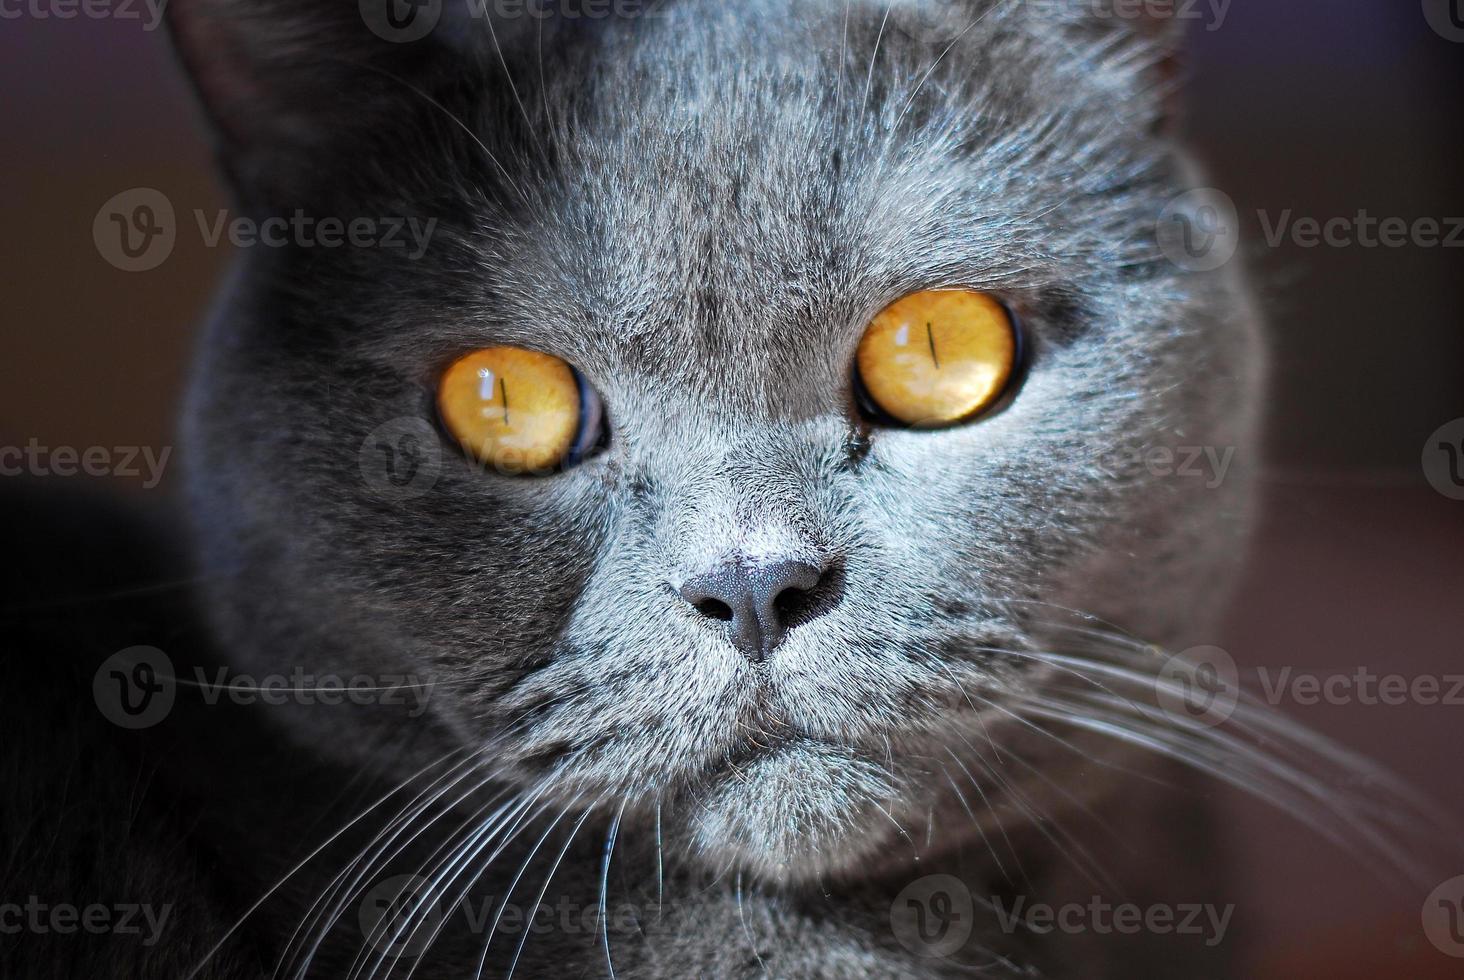 eine graue katze britischer oder schottischer rasse liegt auf dem bett foto